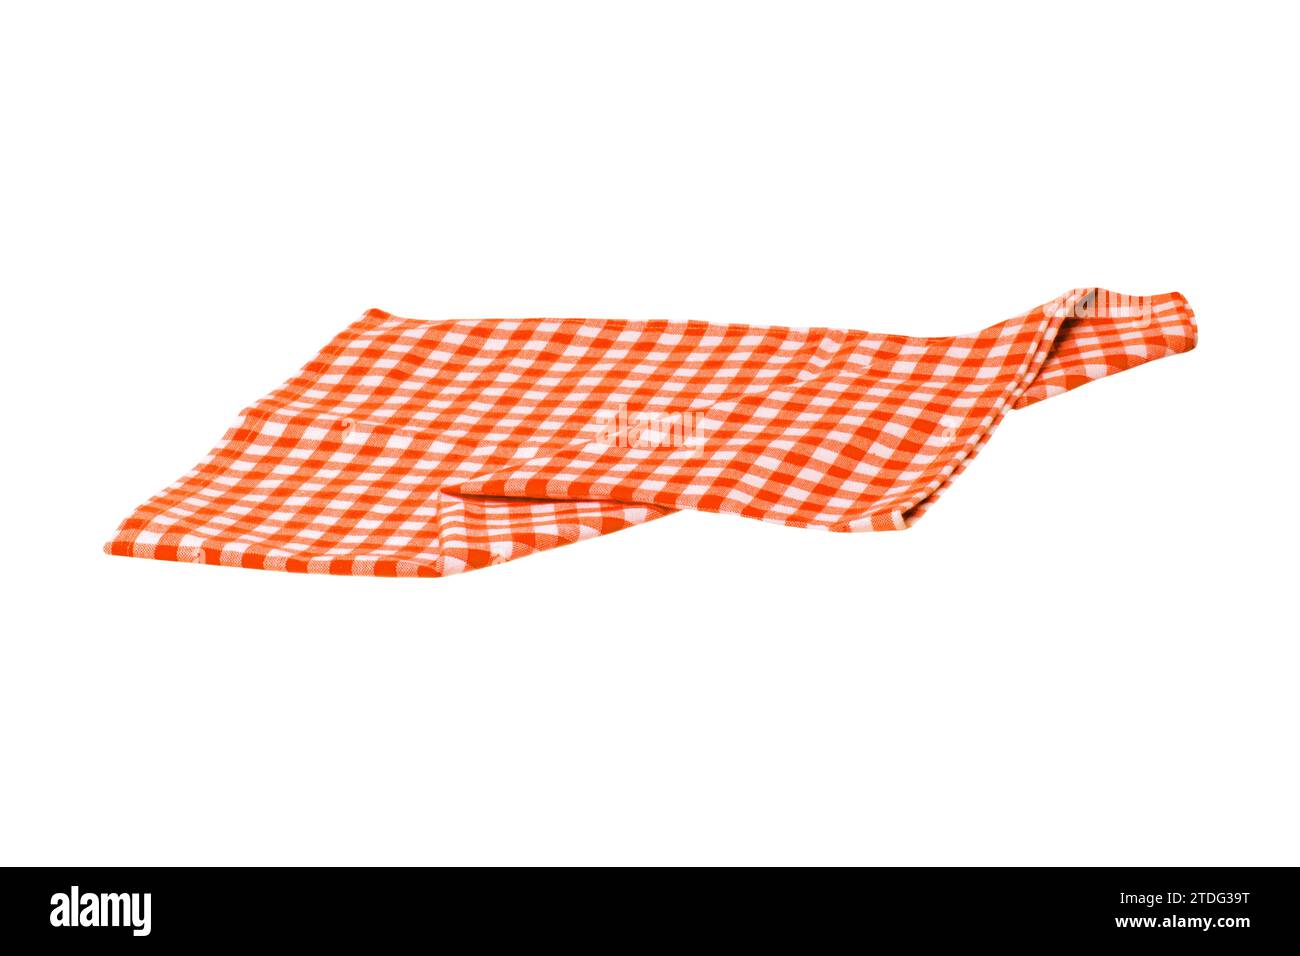 Nahaufnahme einer orangefarbenen und weißen karierten Serviette oder Tischdecke, isoliert auf weißem Hintergrund. Küchenzubehör. Stockfoto